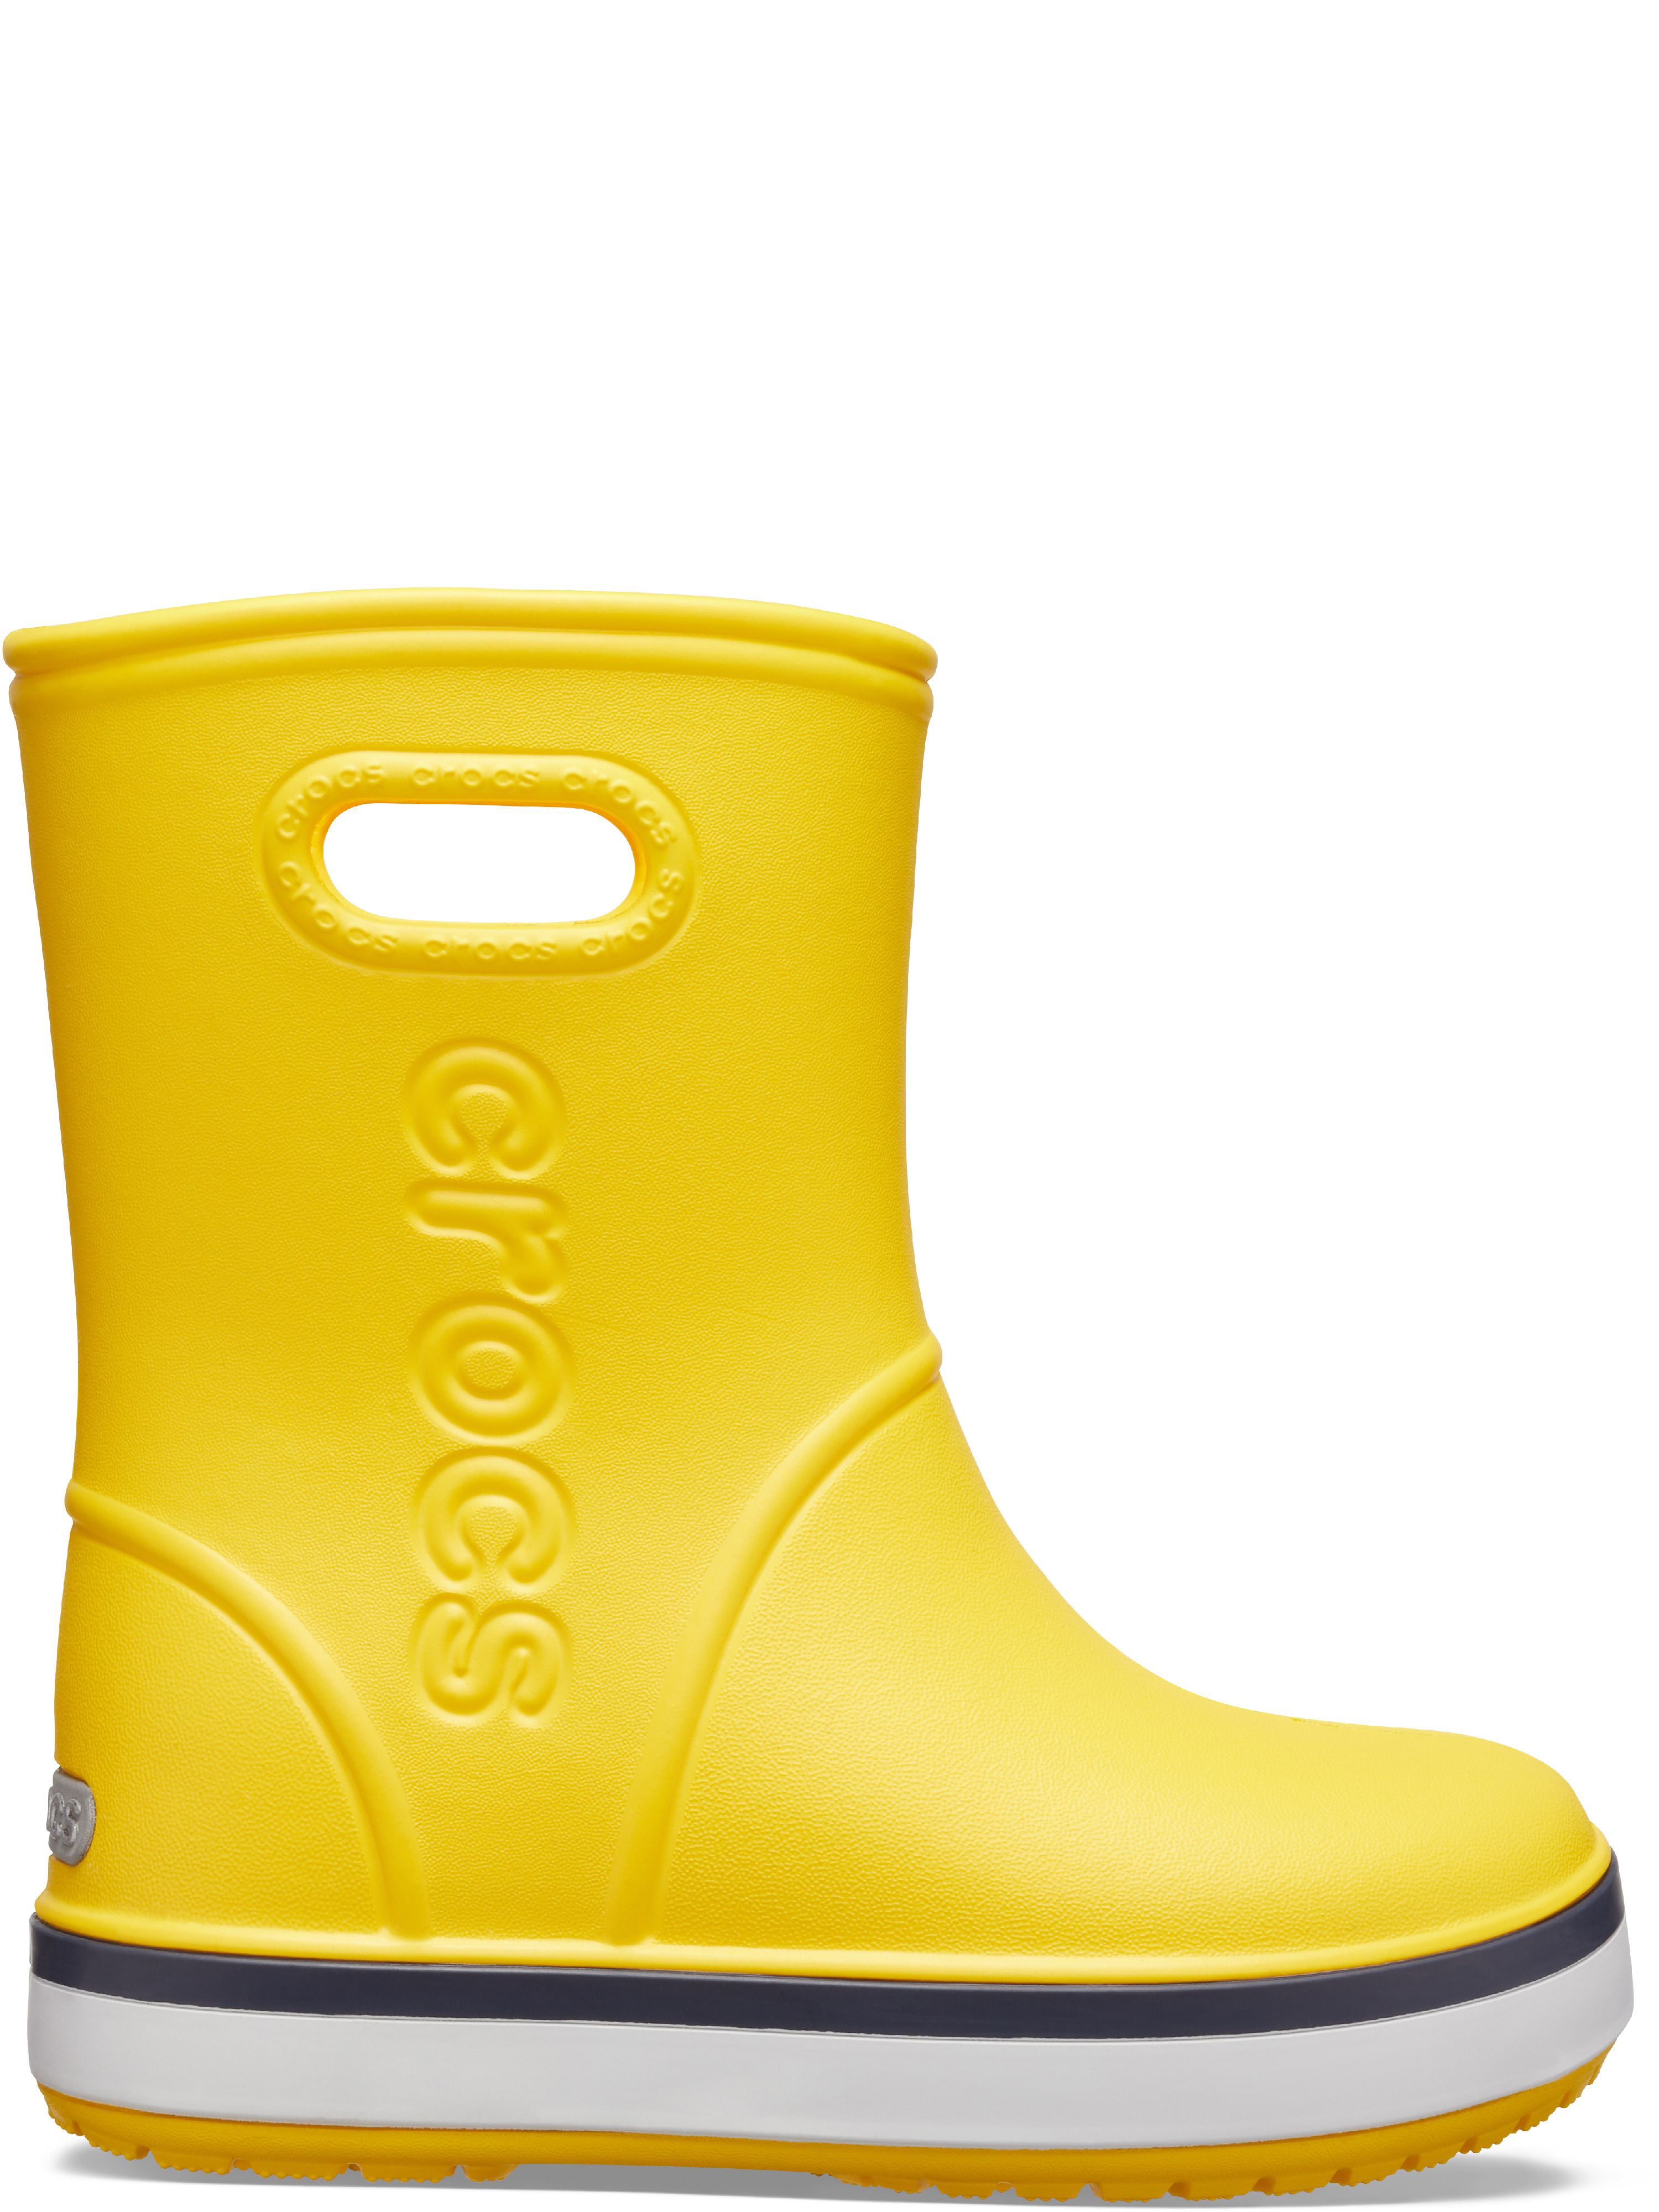 Crocs сапоги купить. Crocs Crocband Rain Boot. Сапоги Crocs Crocband. Резиновые сапоги Crocs Crocband Rain Boot. Крокс желтые резиновые сапоги.